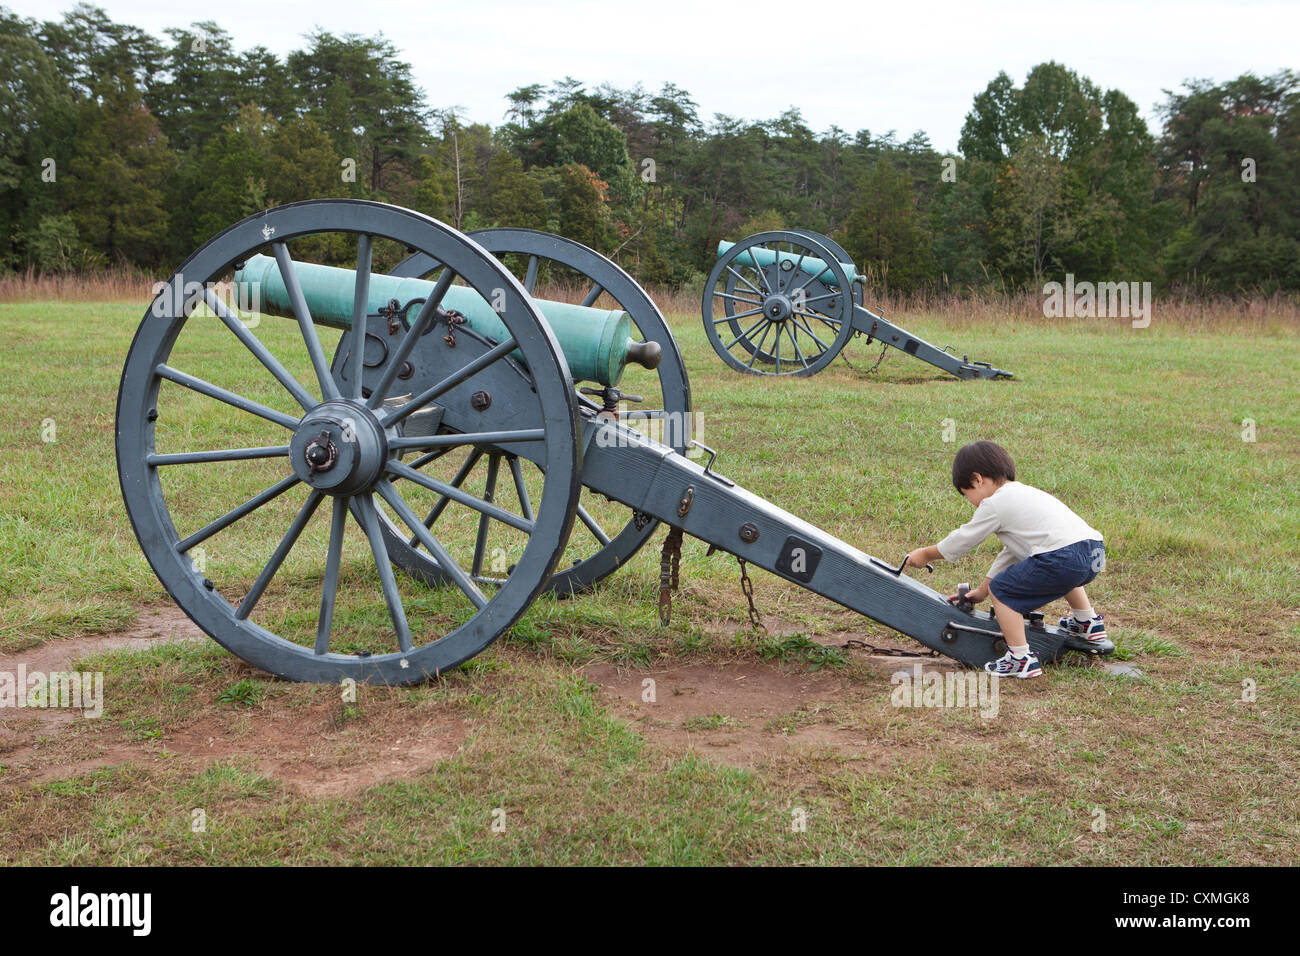 Asiatische junge spielt auf einer amerikanischen Bürgerkrieg-Kanone Stockfoto